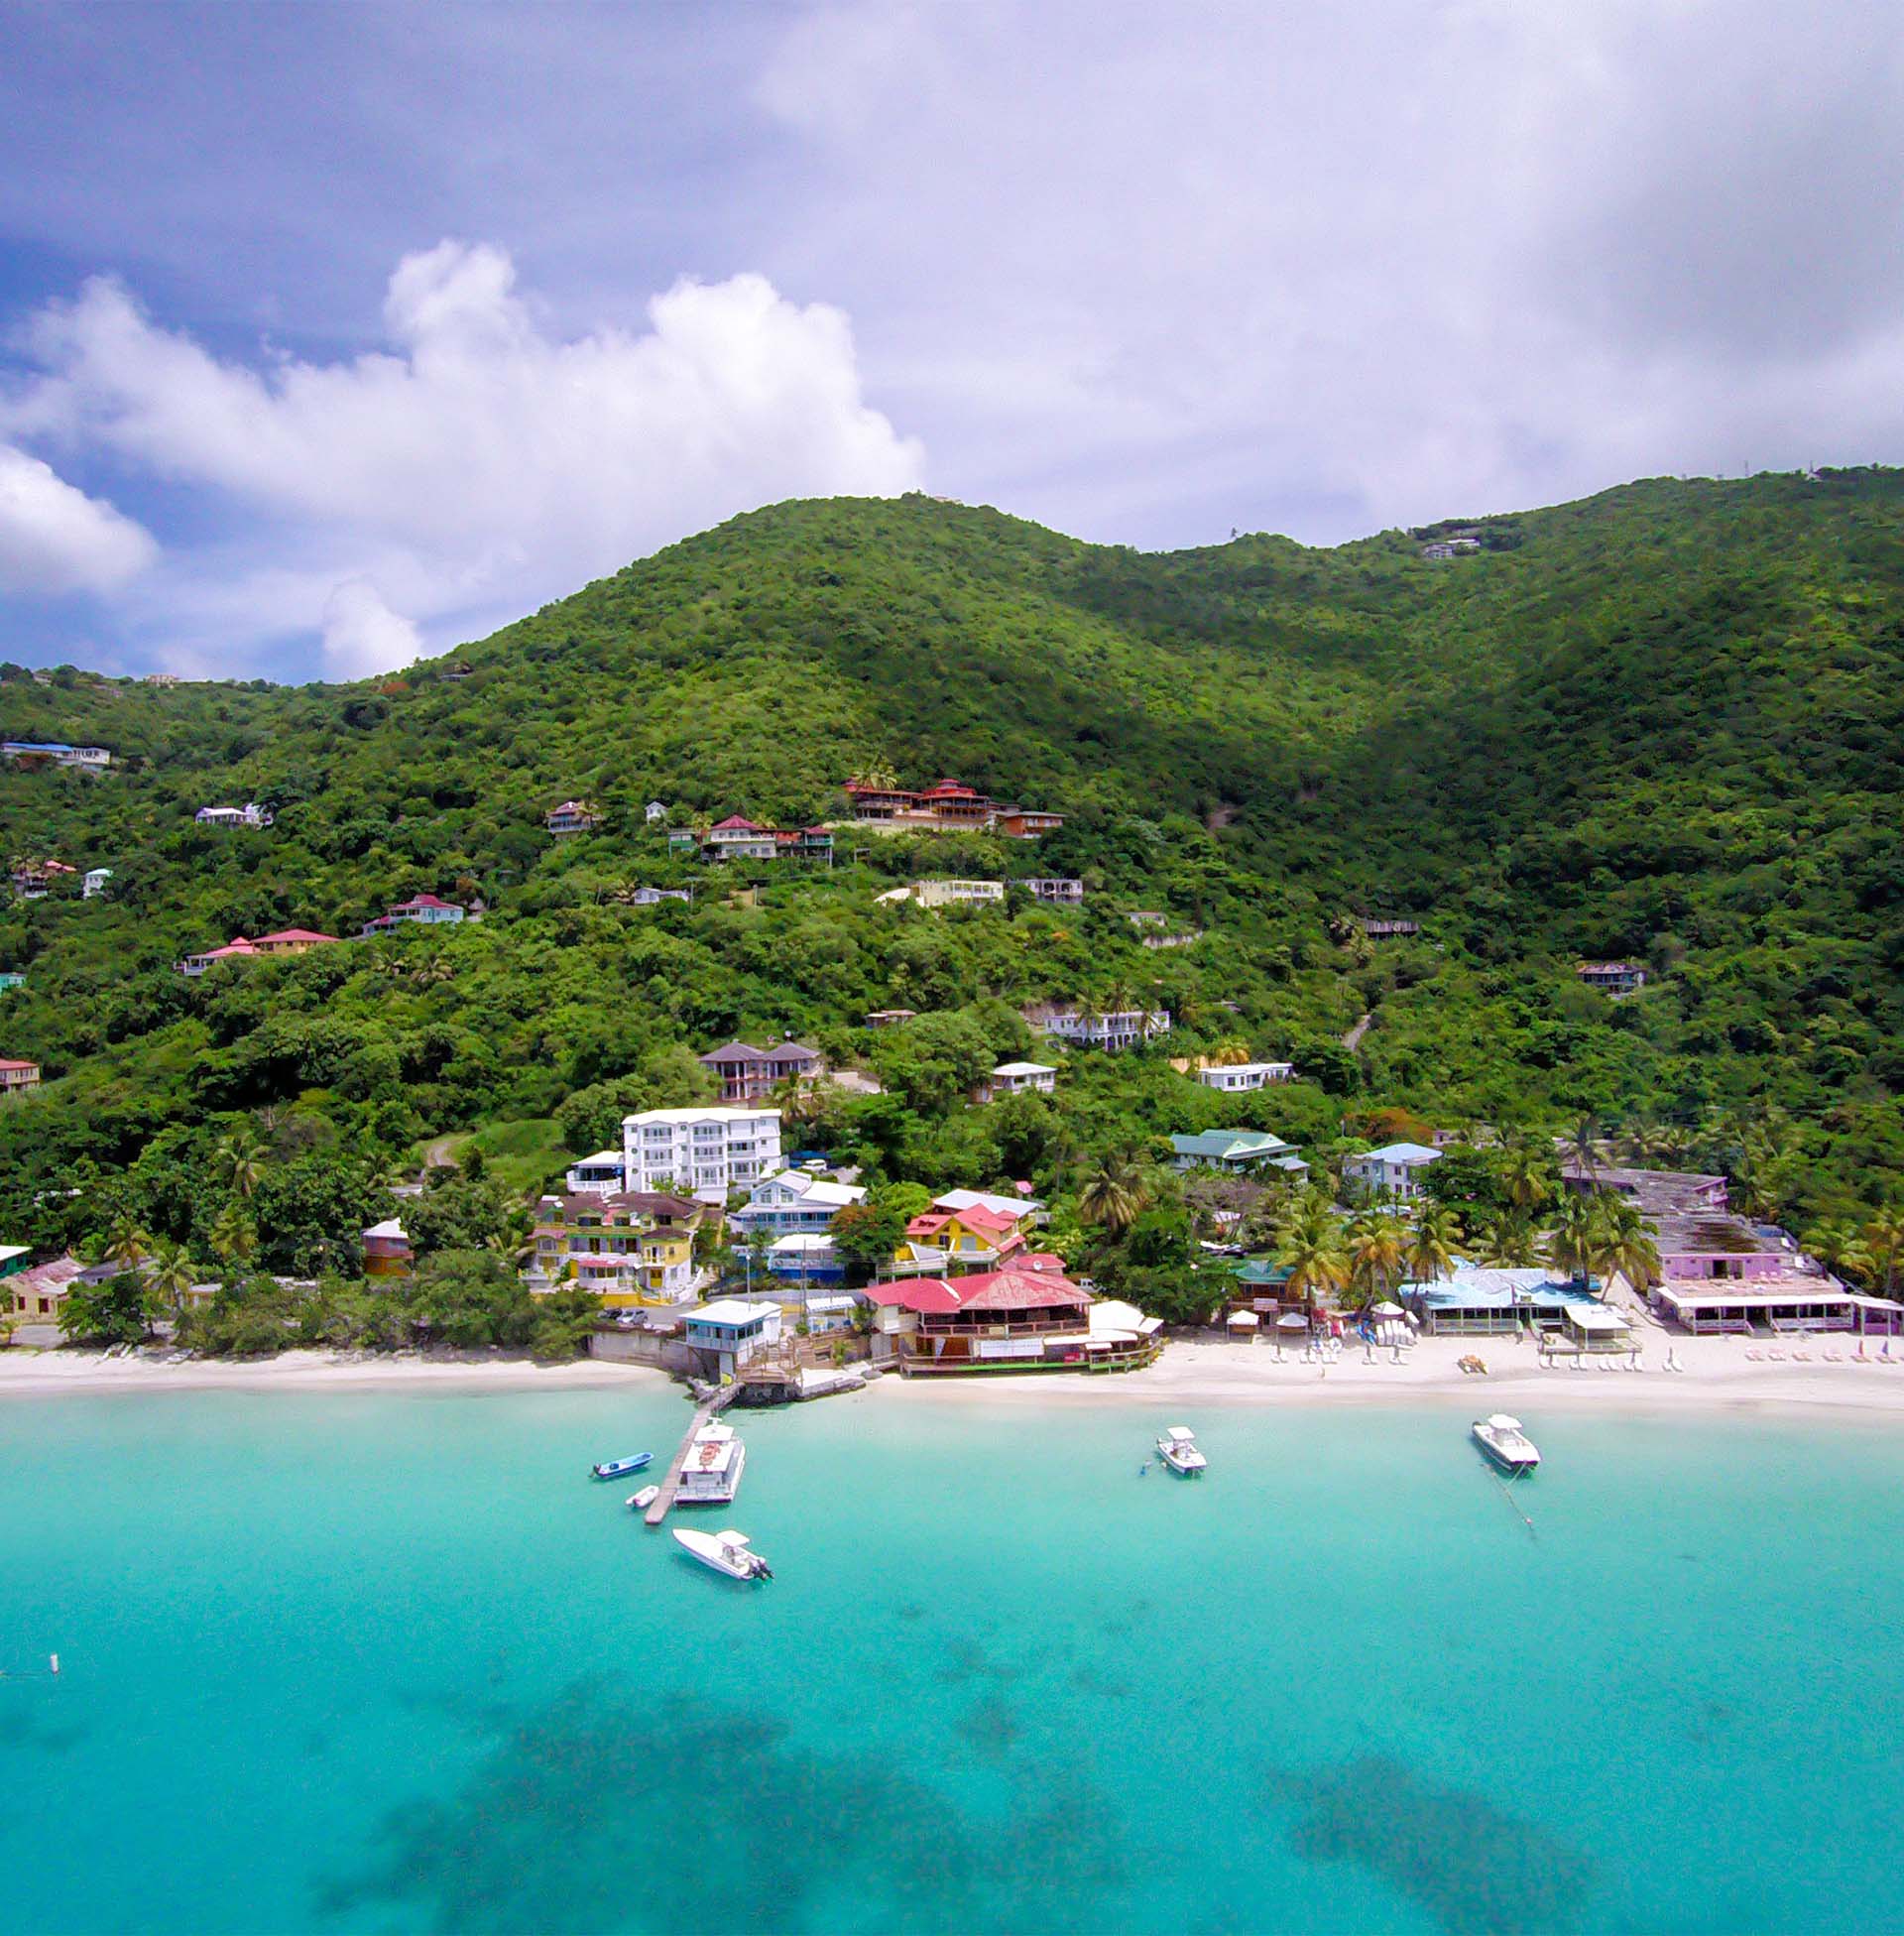 A beautiful beach in the British Virgin Islands